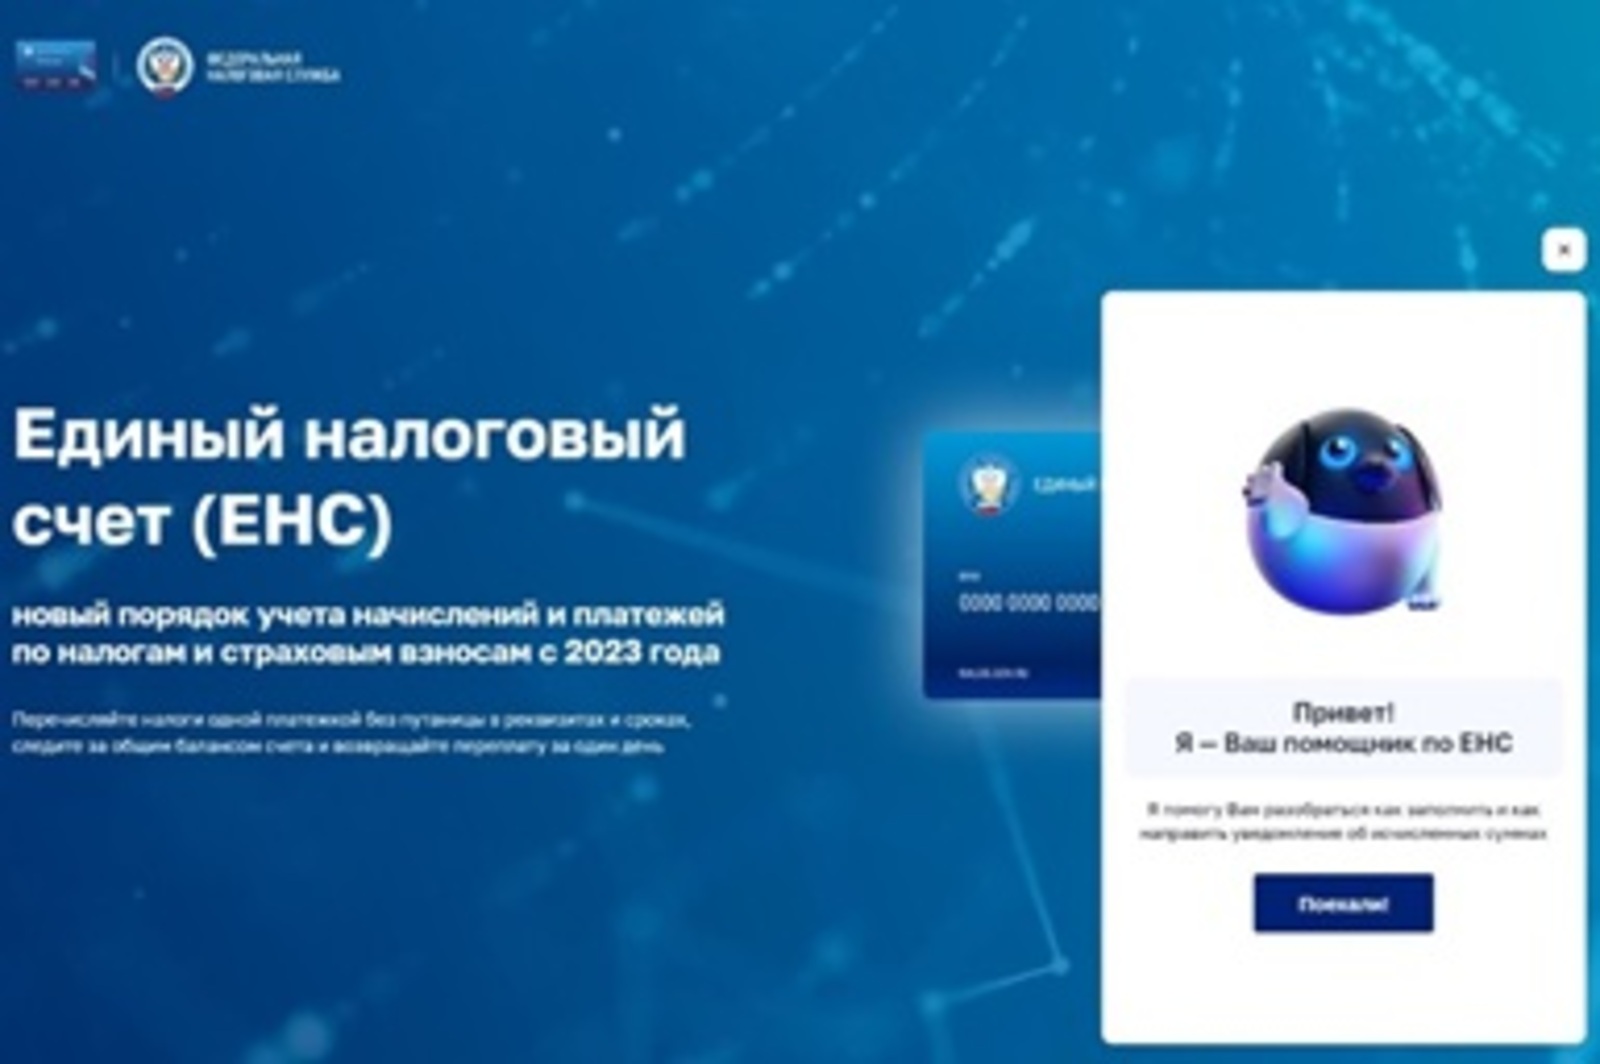 Формировать и направлять уведомления легко с виртуальным помощником сайта ФНС России